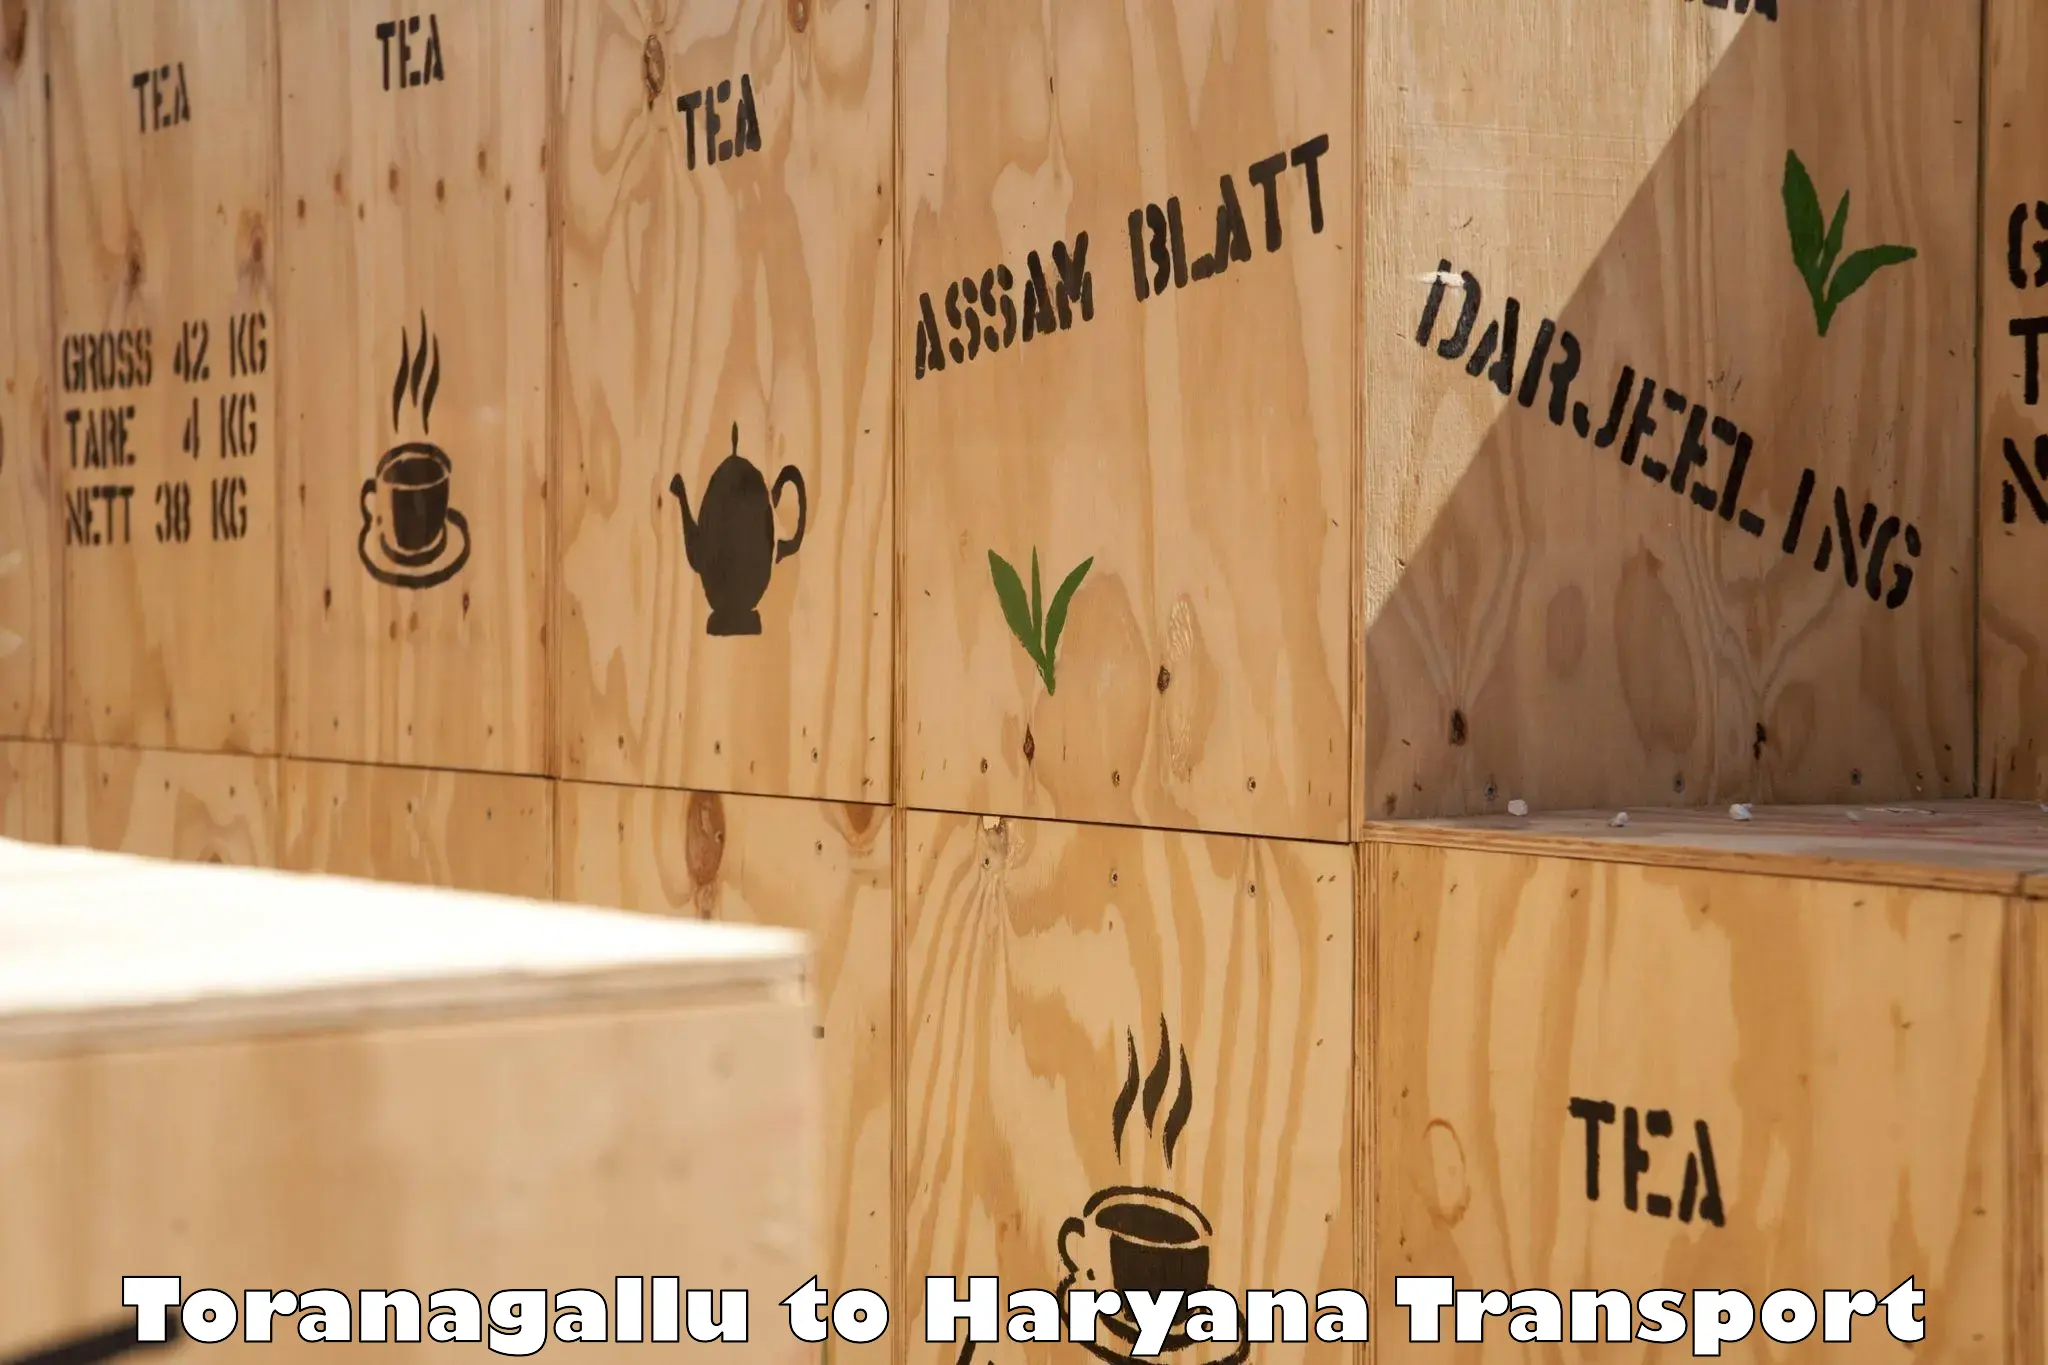 Furniture transport service Toranagallu to Haryana